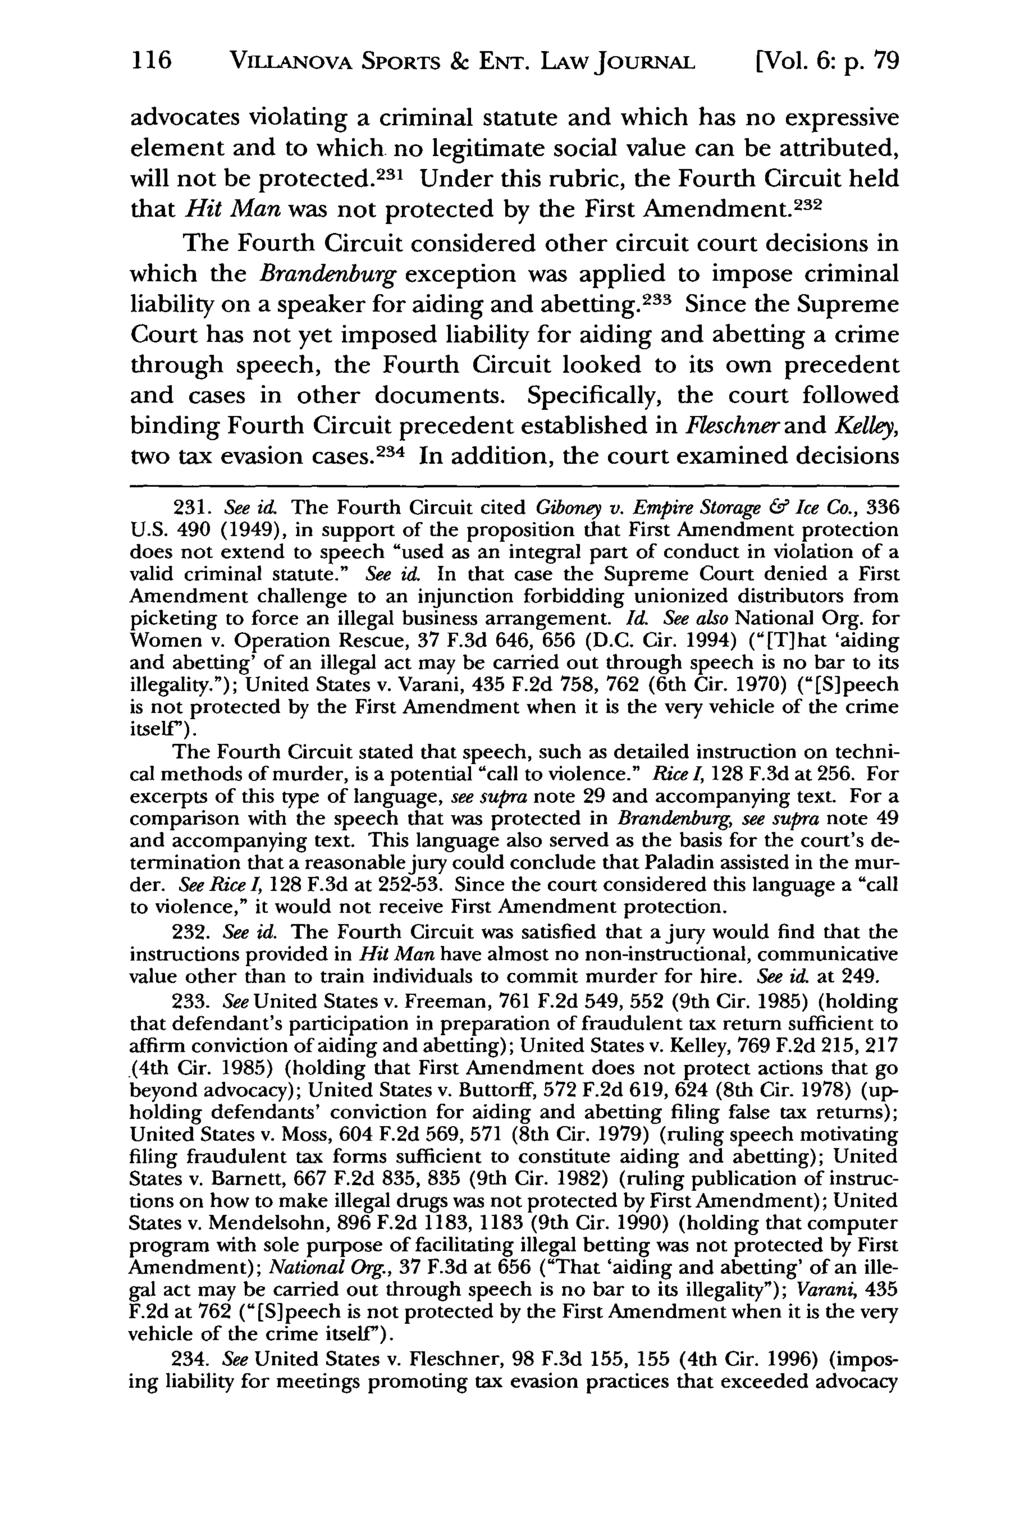 116 VmLANOVA Jeffrey S. Moorad SPORTS Sports Law & ENT. Journal, LAw Vol. 6, JOURNAL Iss. 1 [1999], Art. 5 [Vol. 6: p.